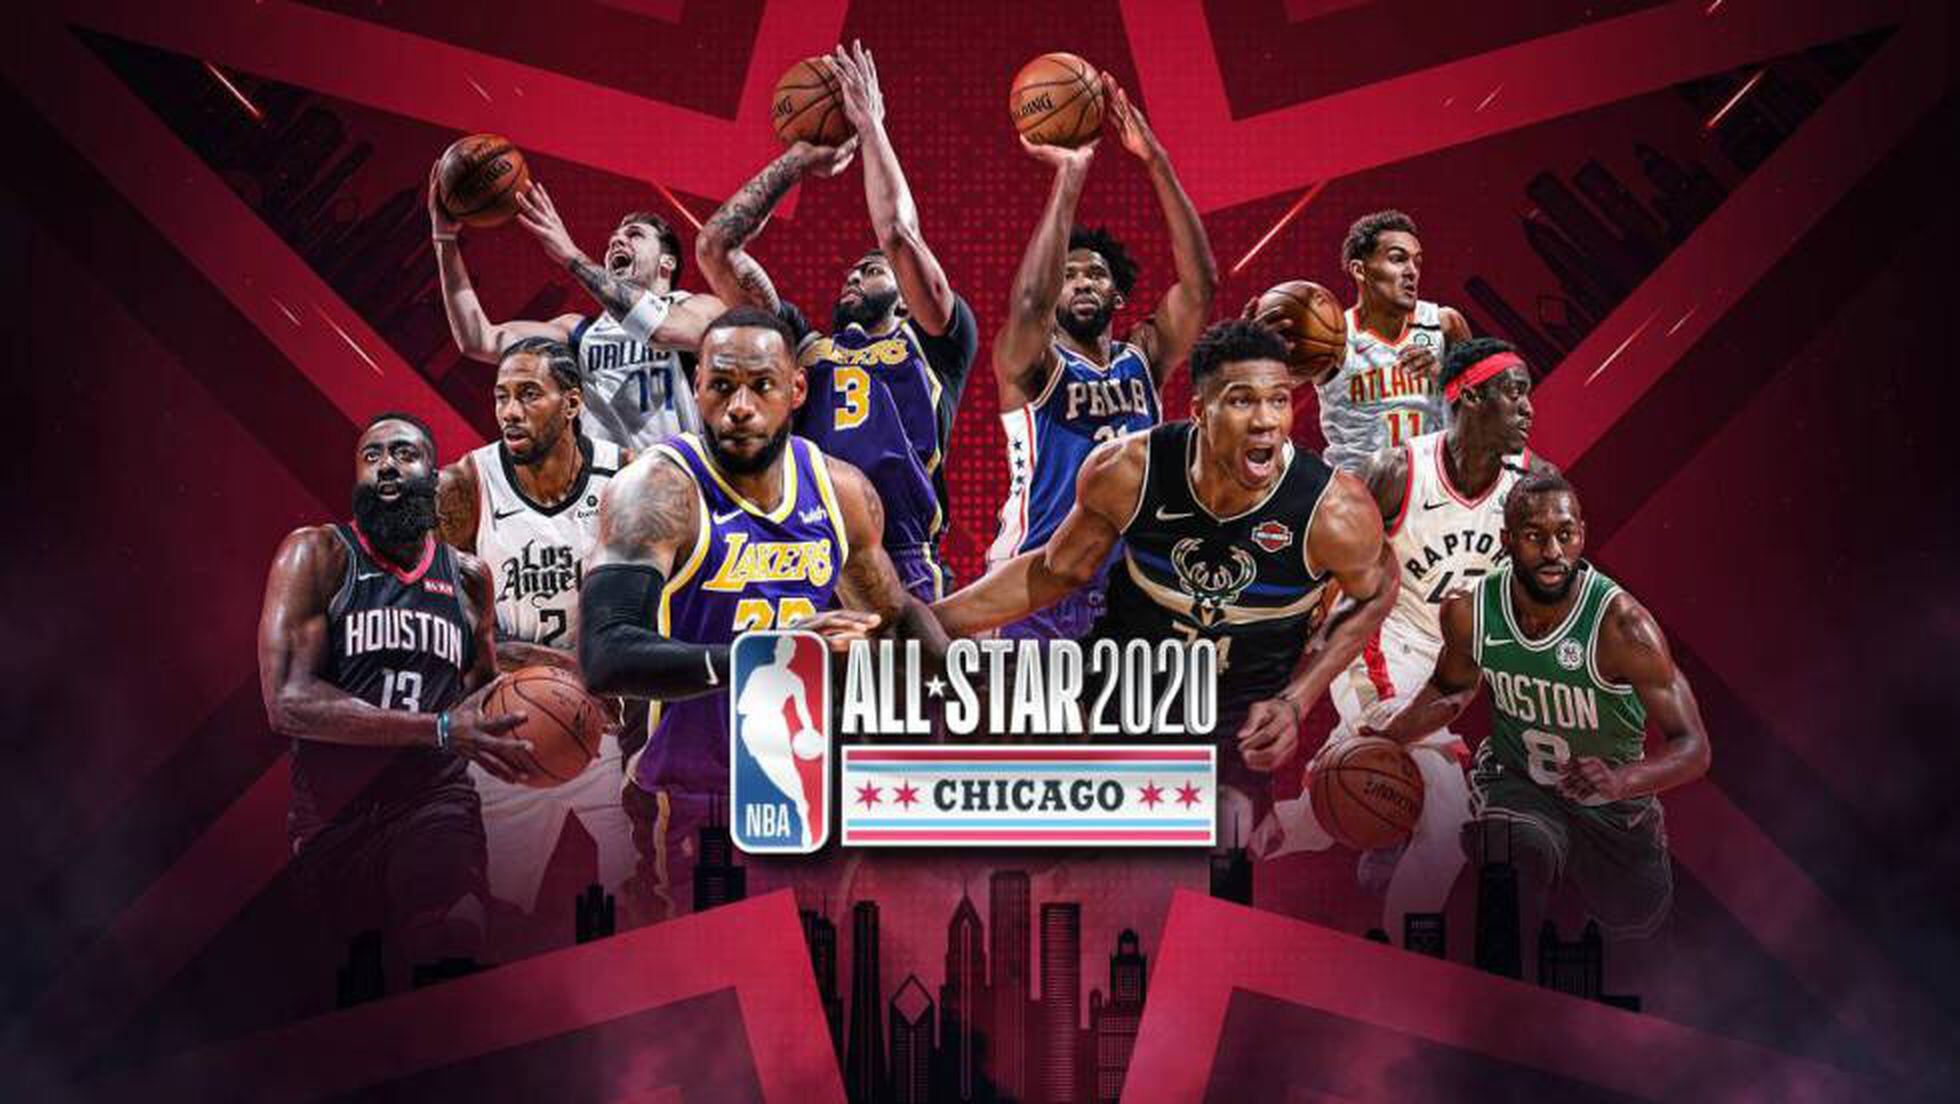 All Star Nba 2020 Horarios Concursos Equipos Y El Partido De Las Estrellas Deportes El Pais [ 1104 x 1960 Pixel ]